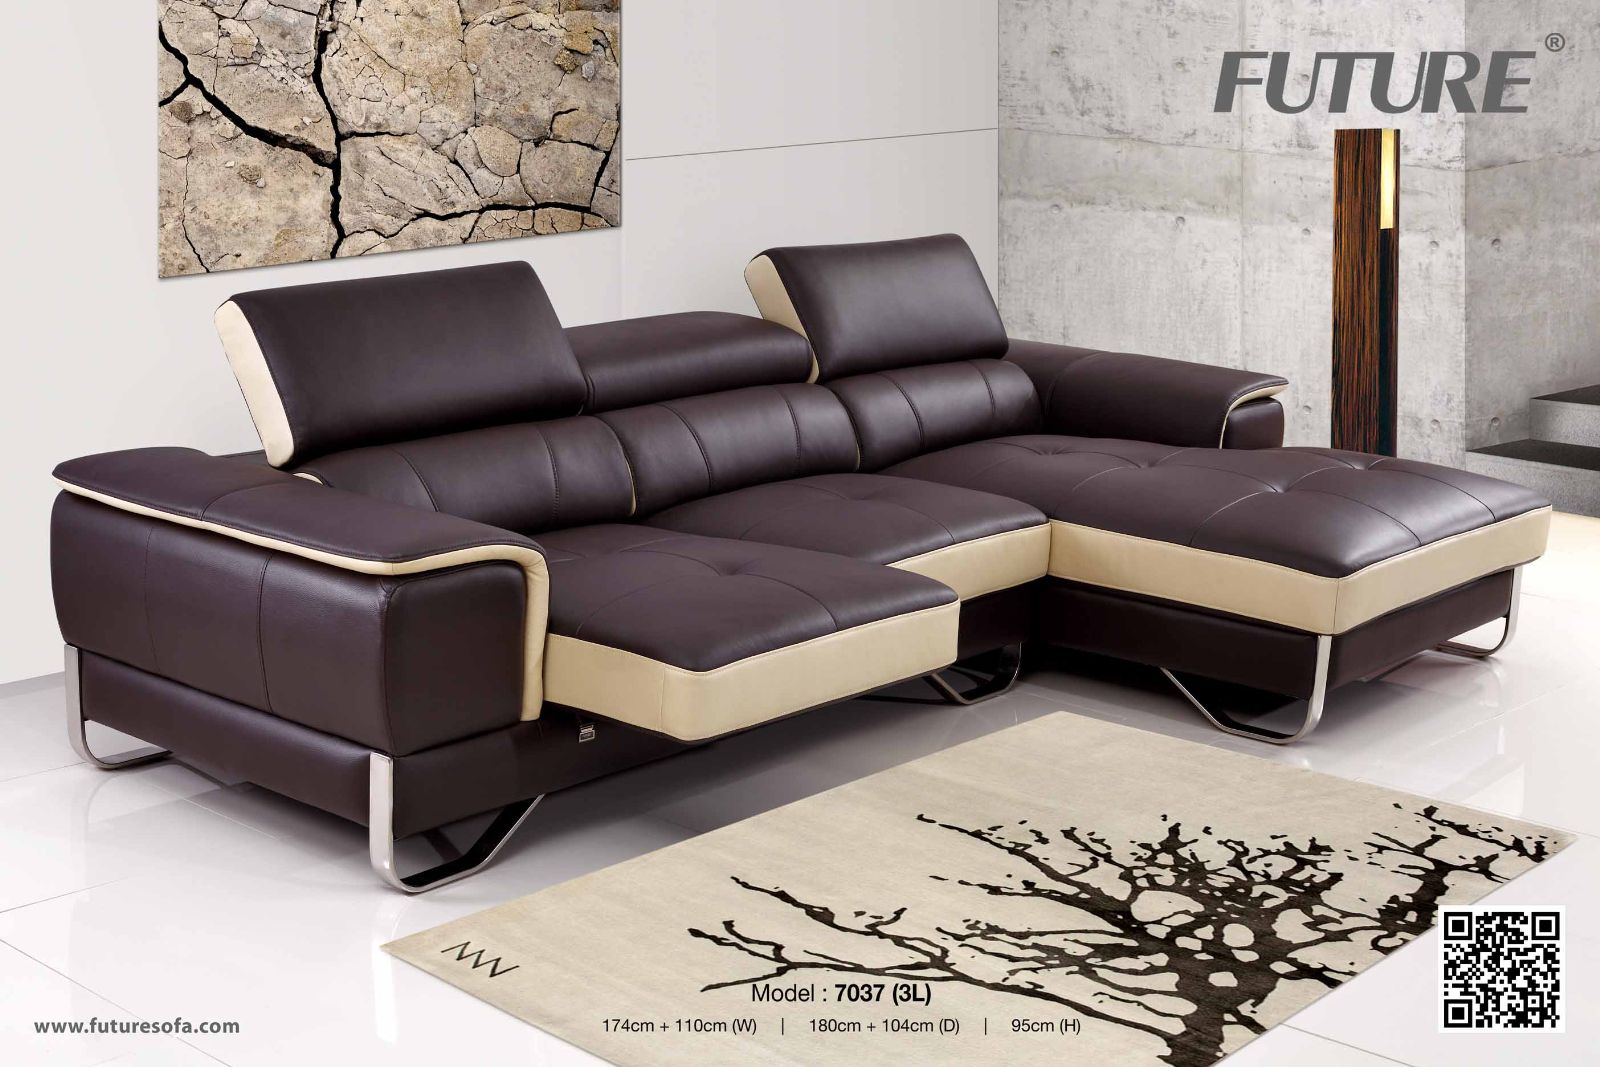 Ghế sofa đa chức năng - thiết kế mới tối ưu hoàn hảo cho không gian nhà bạn - Ảnh 2